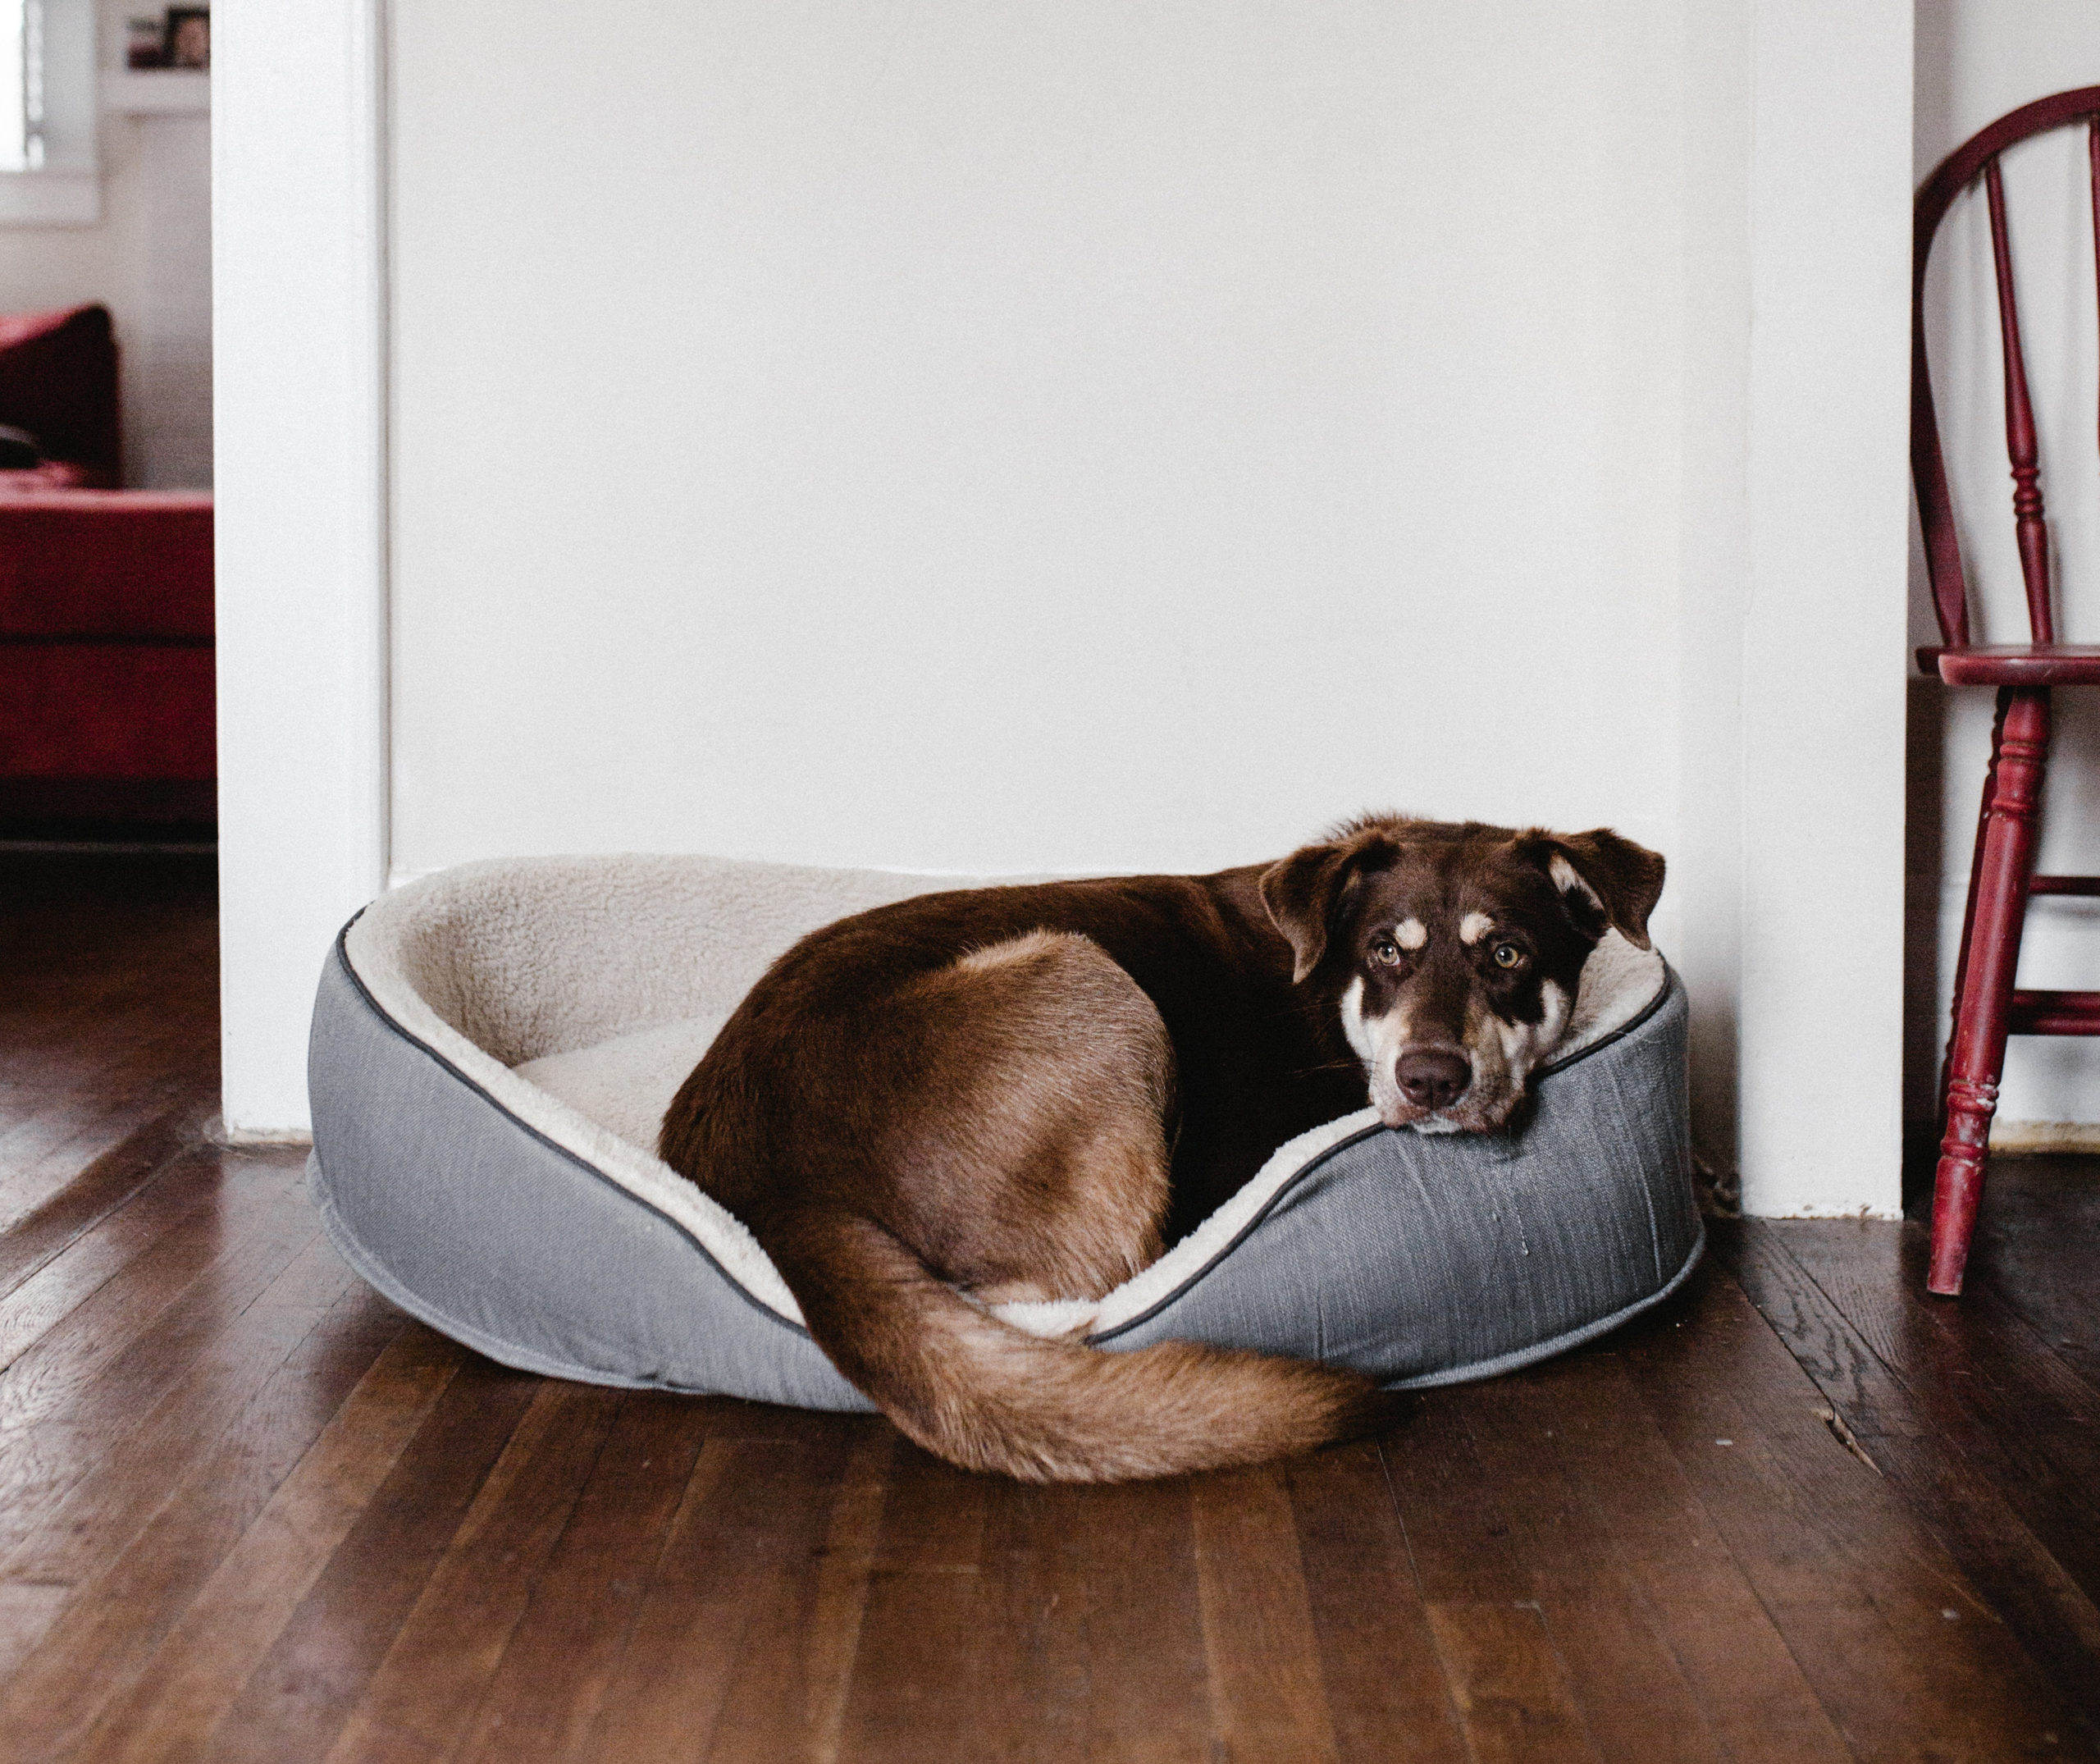 Beneficios de la cama colecho para perros